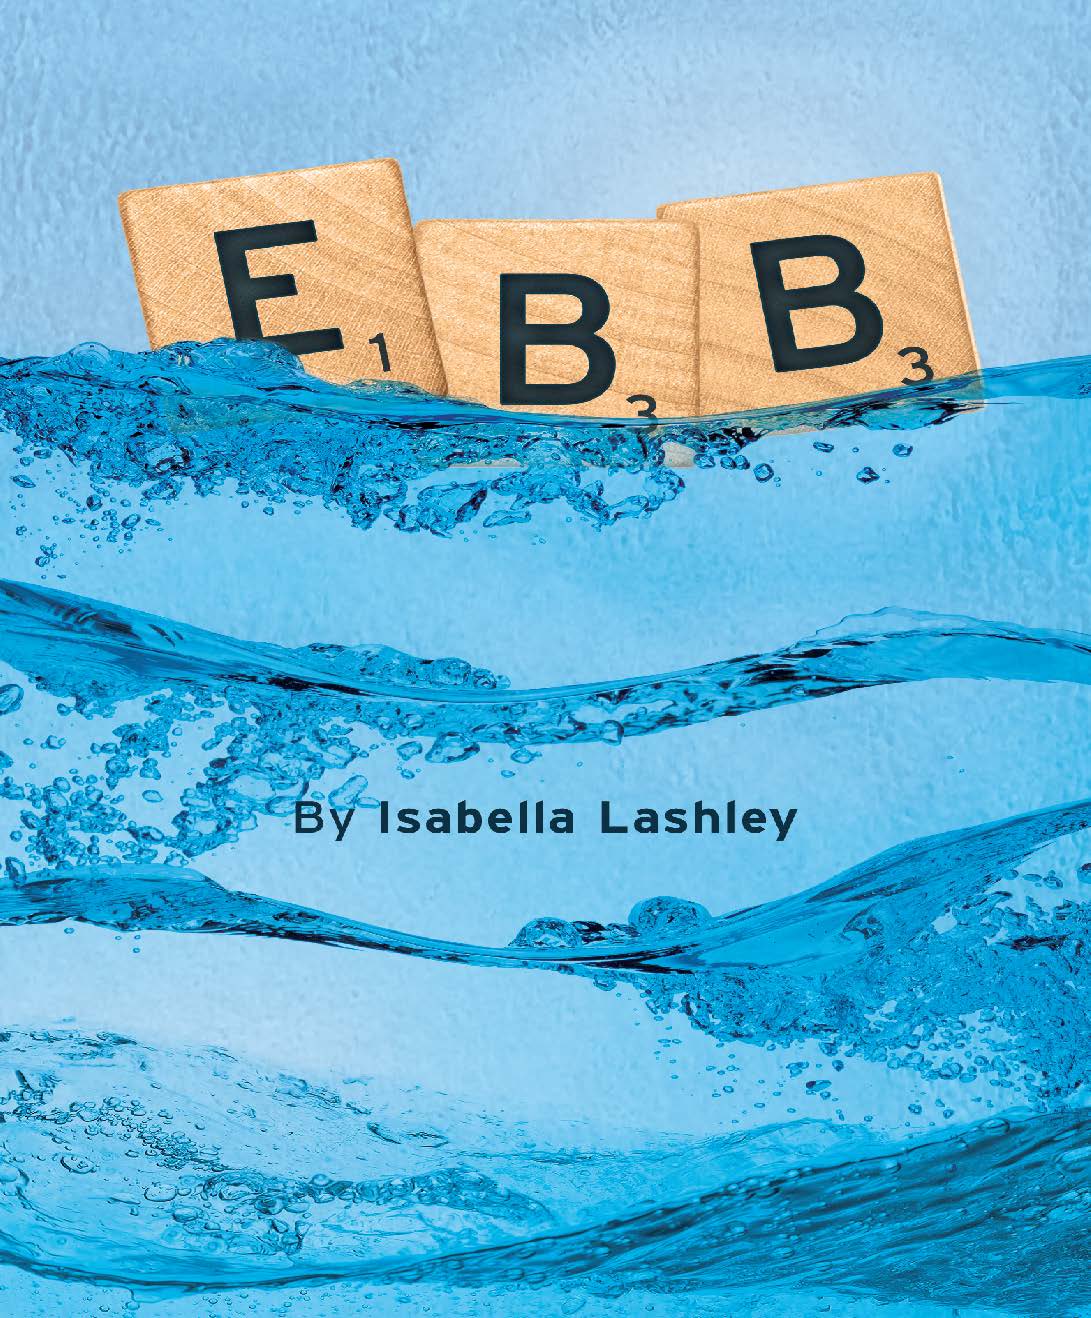 Paperback Project Authors &#8211; Isabella Lashley